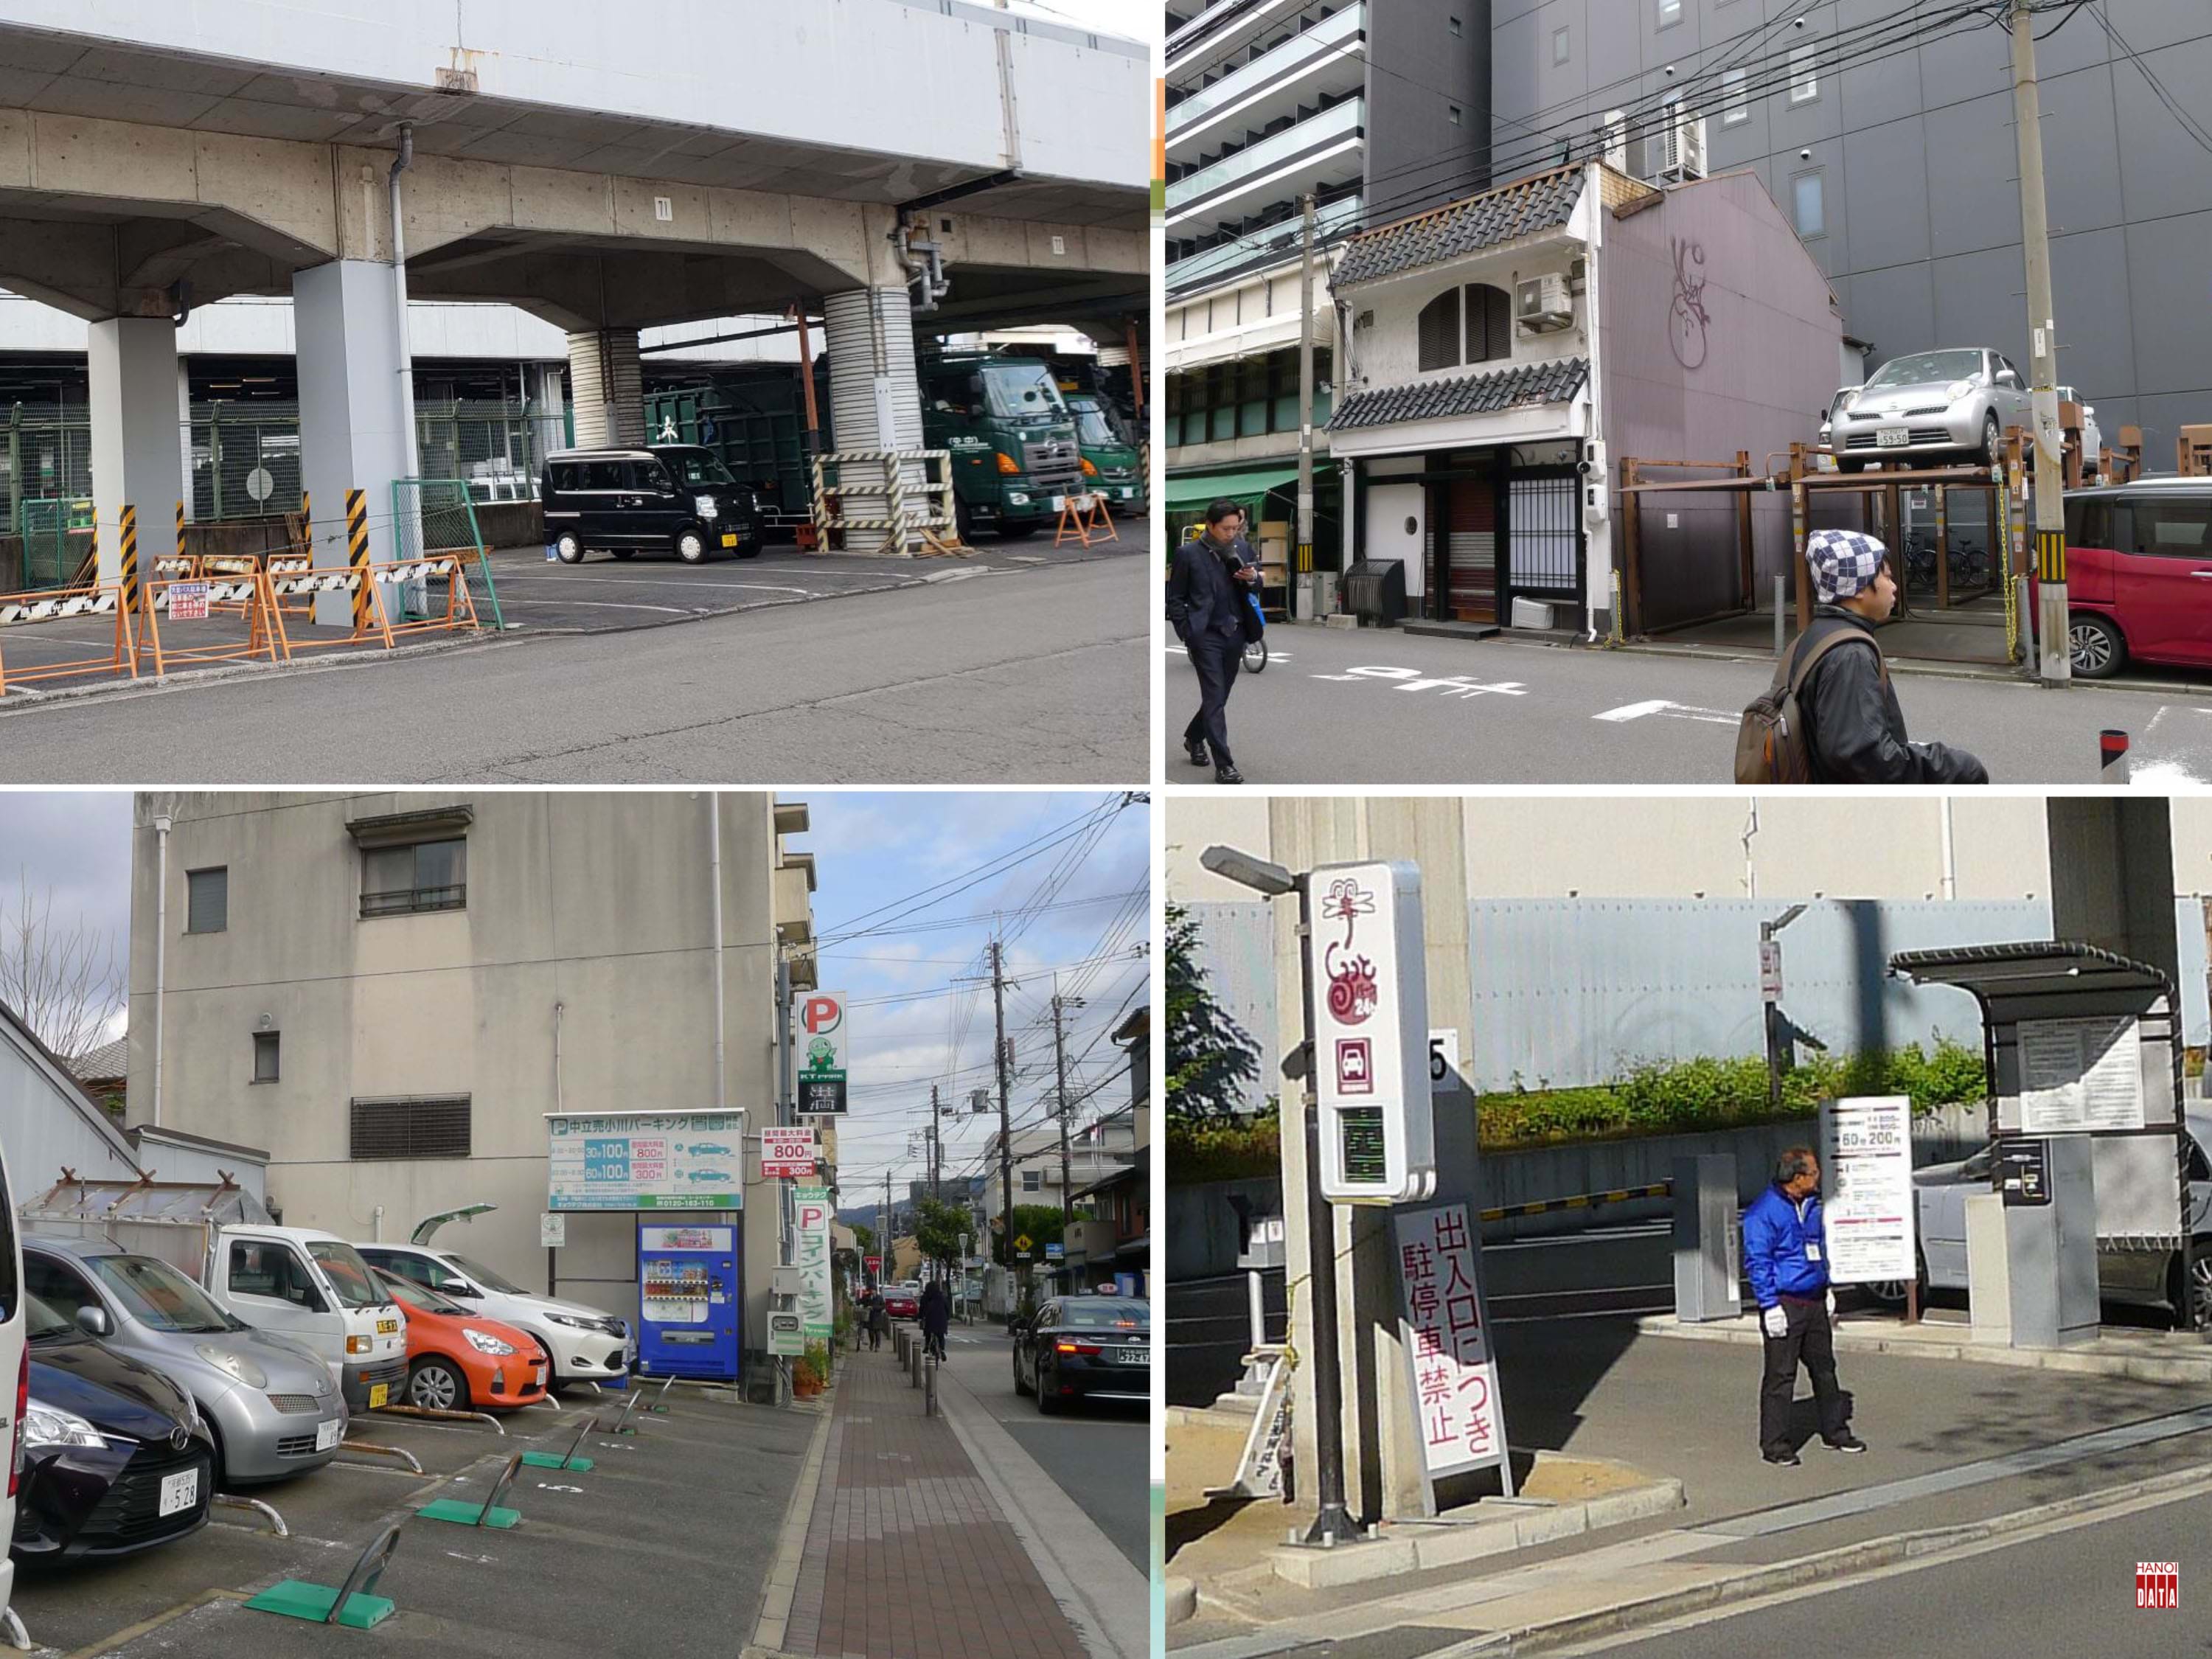 Tại  Kyoto (Nhật Bản): Từng mét vuông đất công được tận dụng làm bãi đỗ xe. Đất tư để hoang bị đánh thuế nặng nên khai thác đỗ xe đa dạng. Các khâu quản lý được tự động hóa, nhân viên trông xe chỉ làm việc cảnh báo an toàn cho xe ra vào...